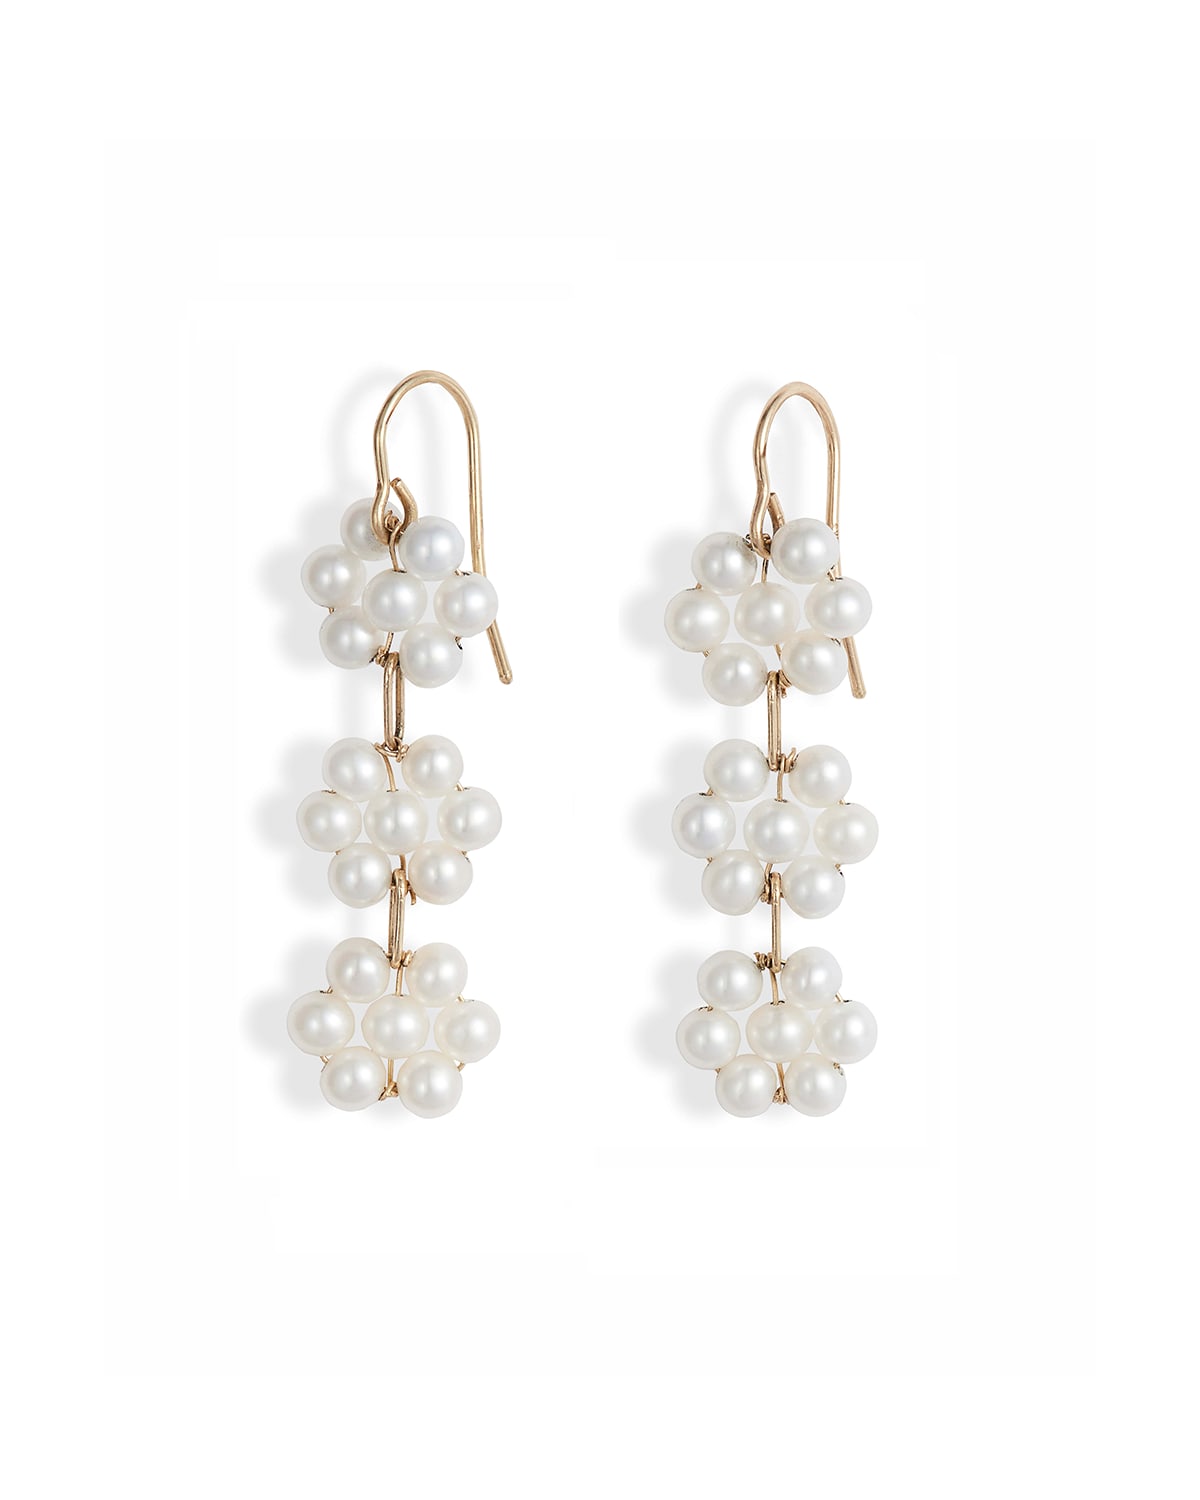 Poppy Finch 14k Gold Triple Pearl Flower Drop Earrings